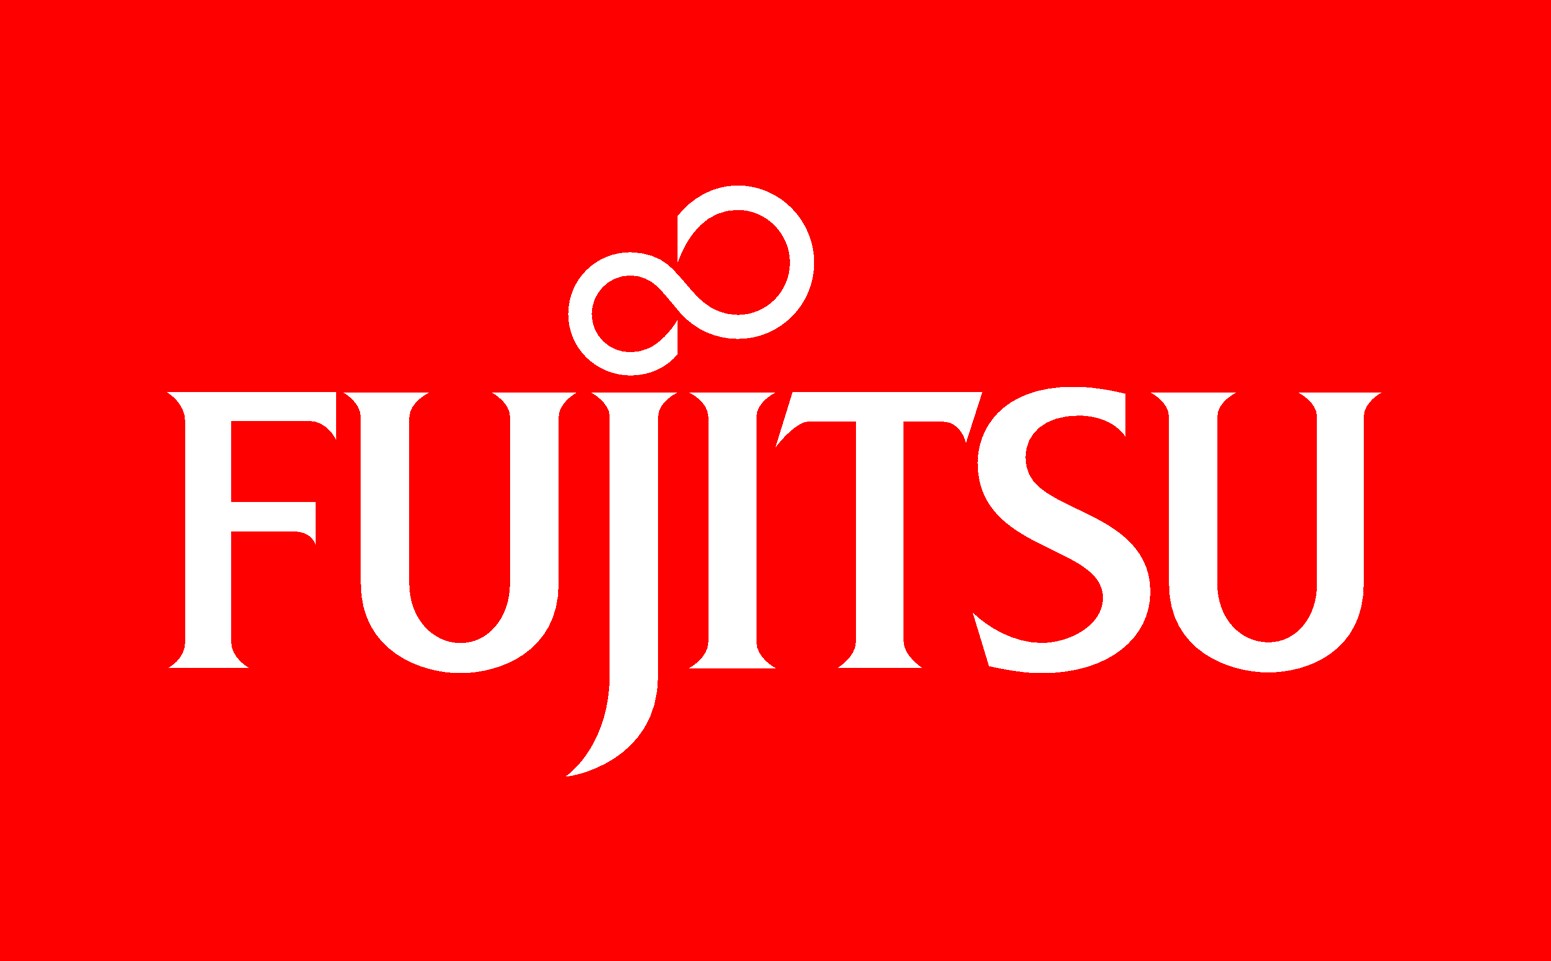 4) Fujitsu